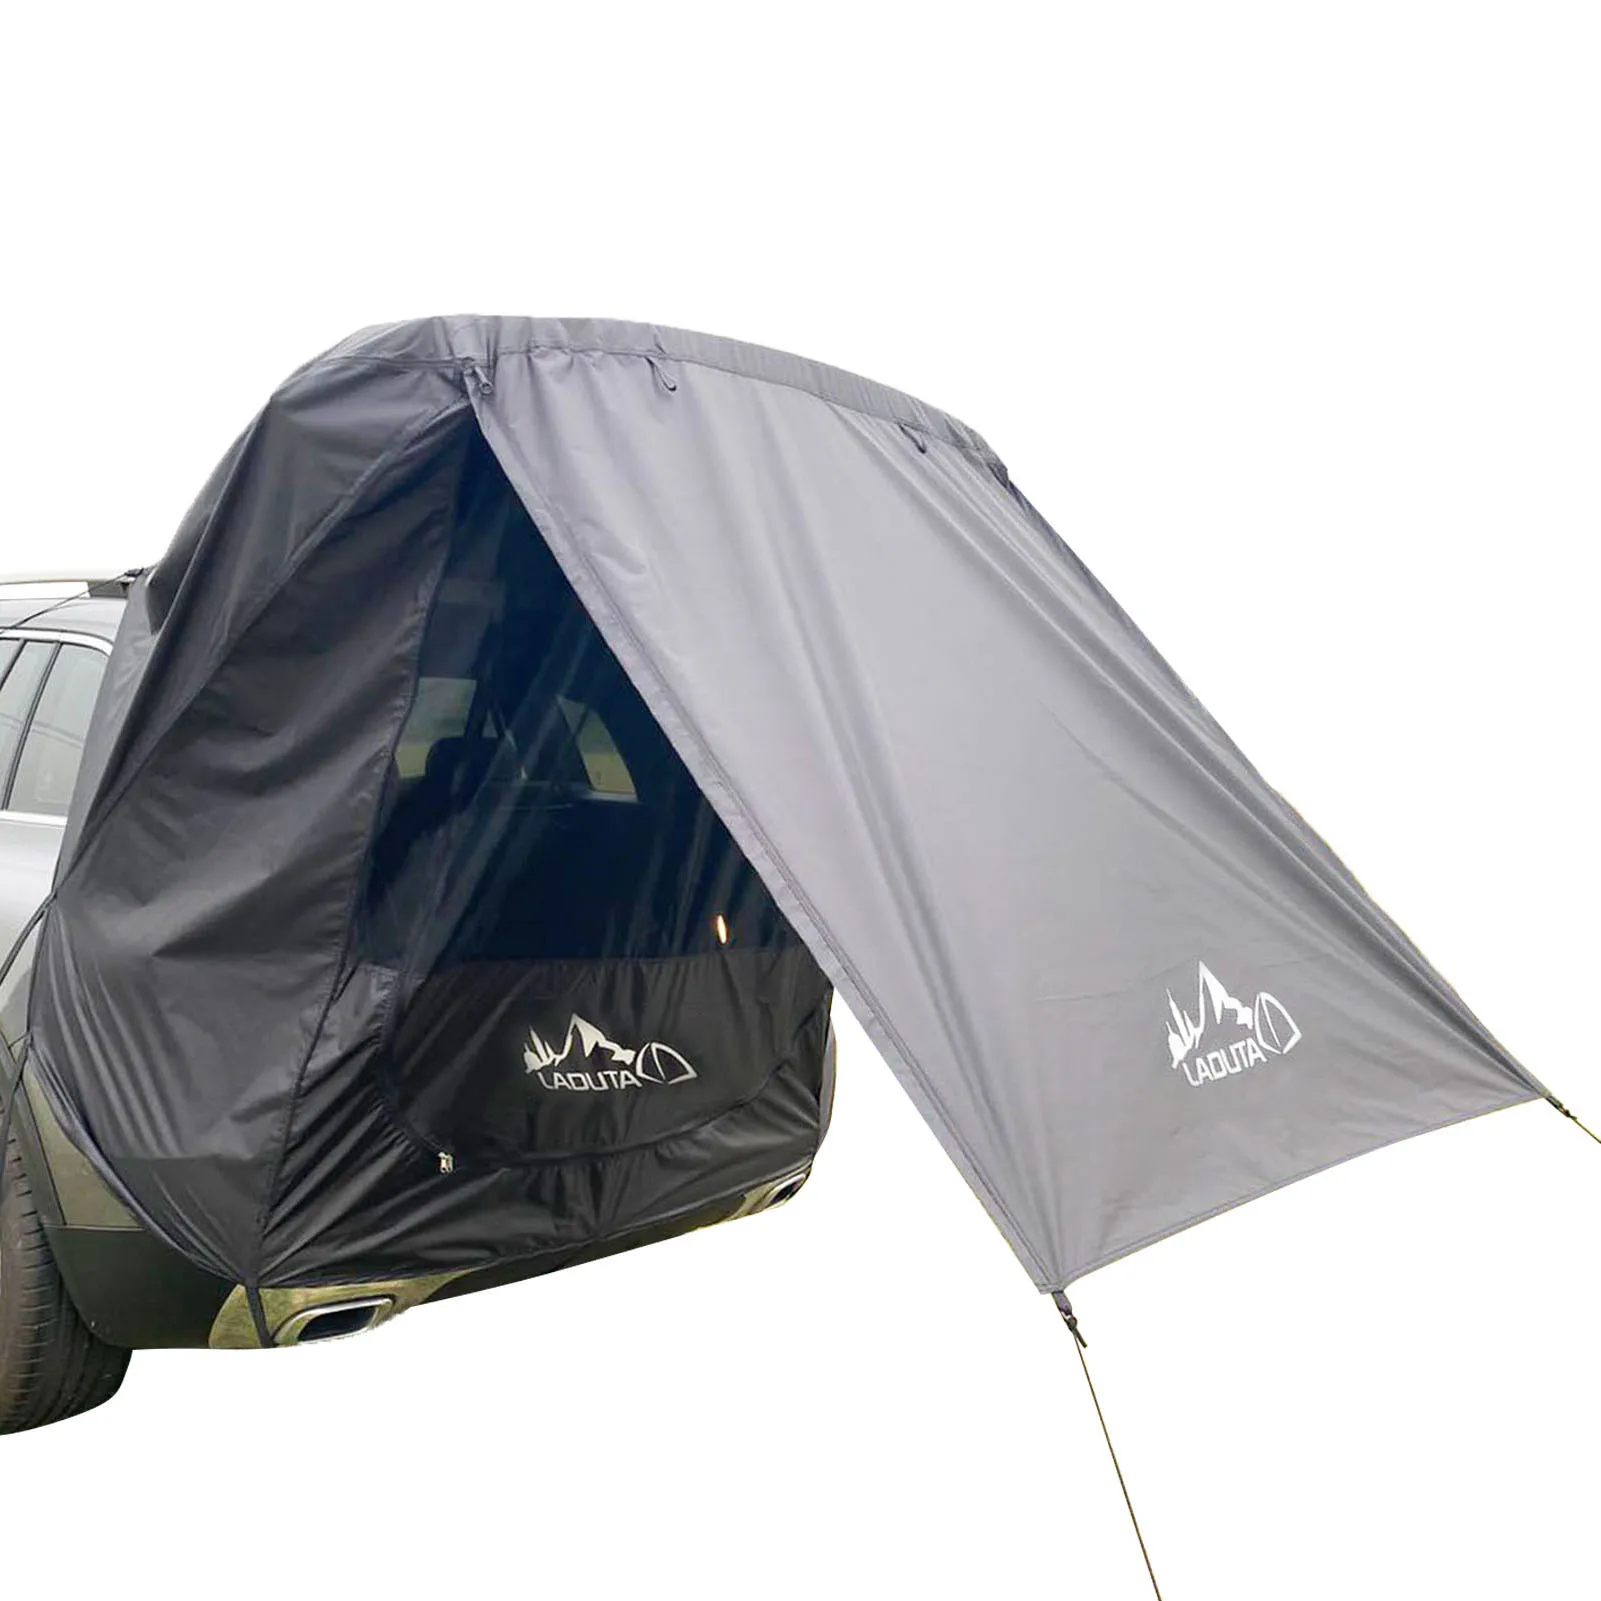 저렴한 캠핑 텐트 자동차 트렁크 텐트 자동차 침대 캠프 텐트 픽업 트럭에 대 한 자기 운전 투어 쉼터 야외에 대 한 방수